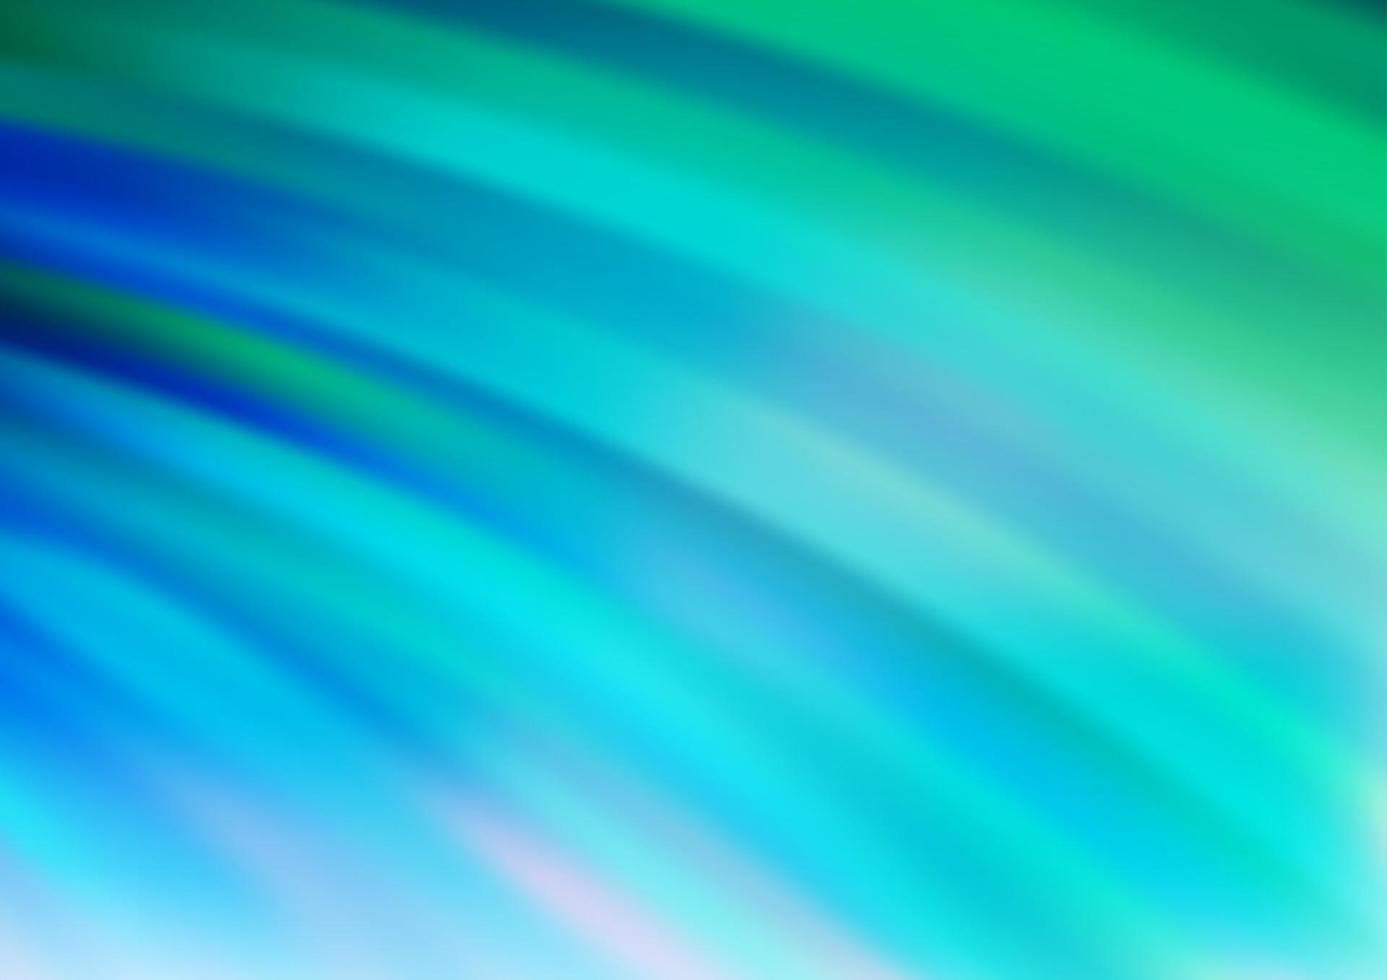 sfondo vettoriale azzurro, verde con forme di lampada.